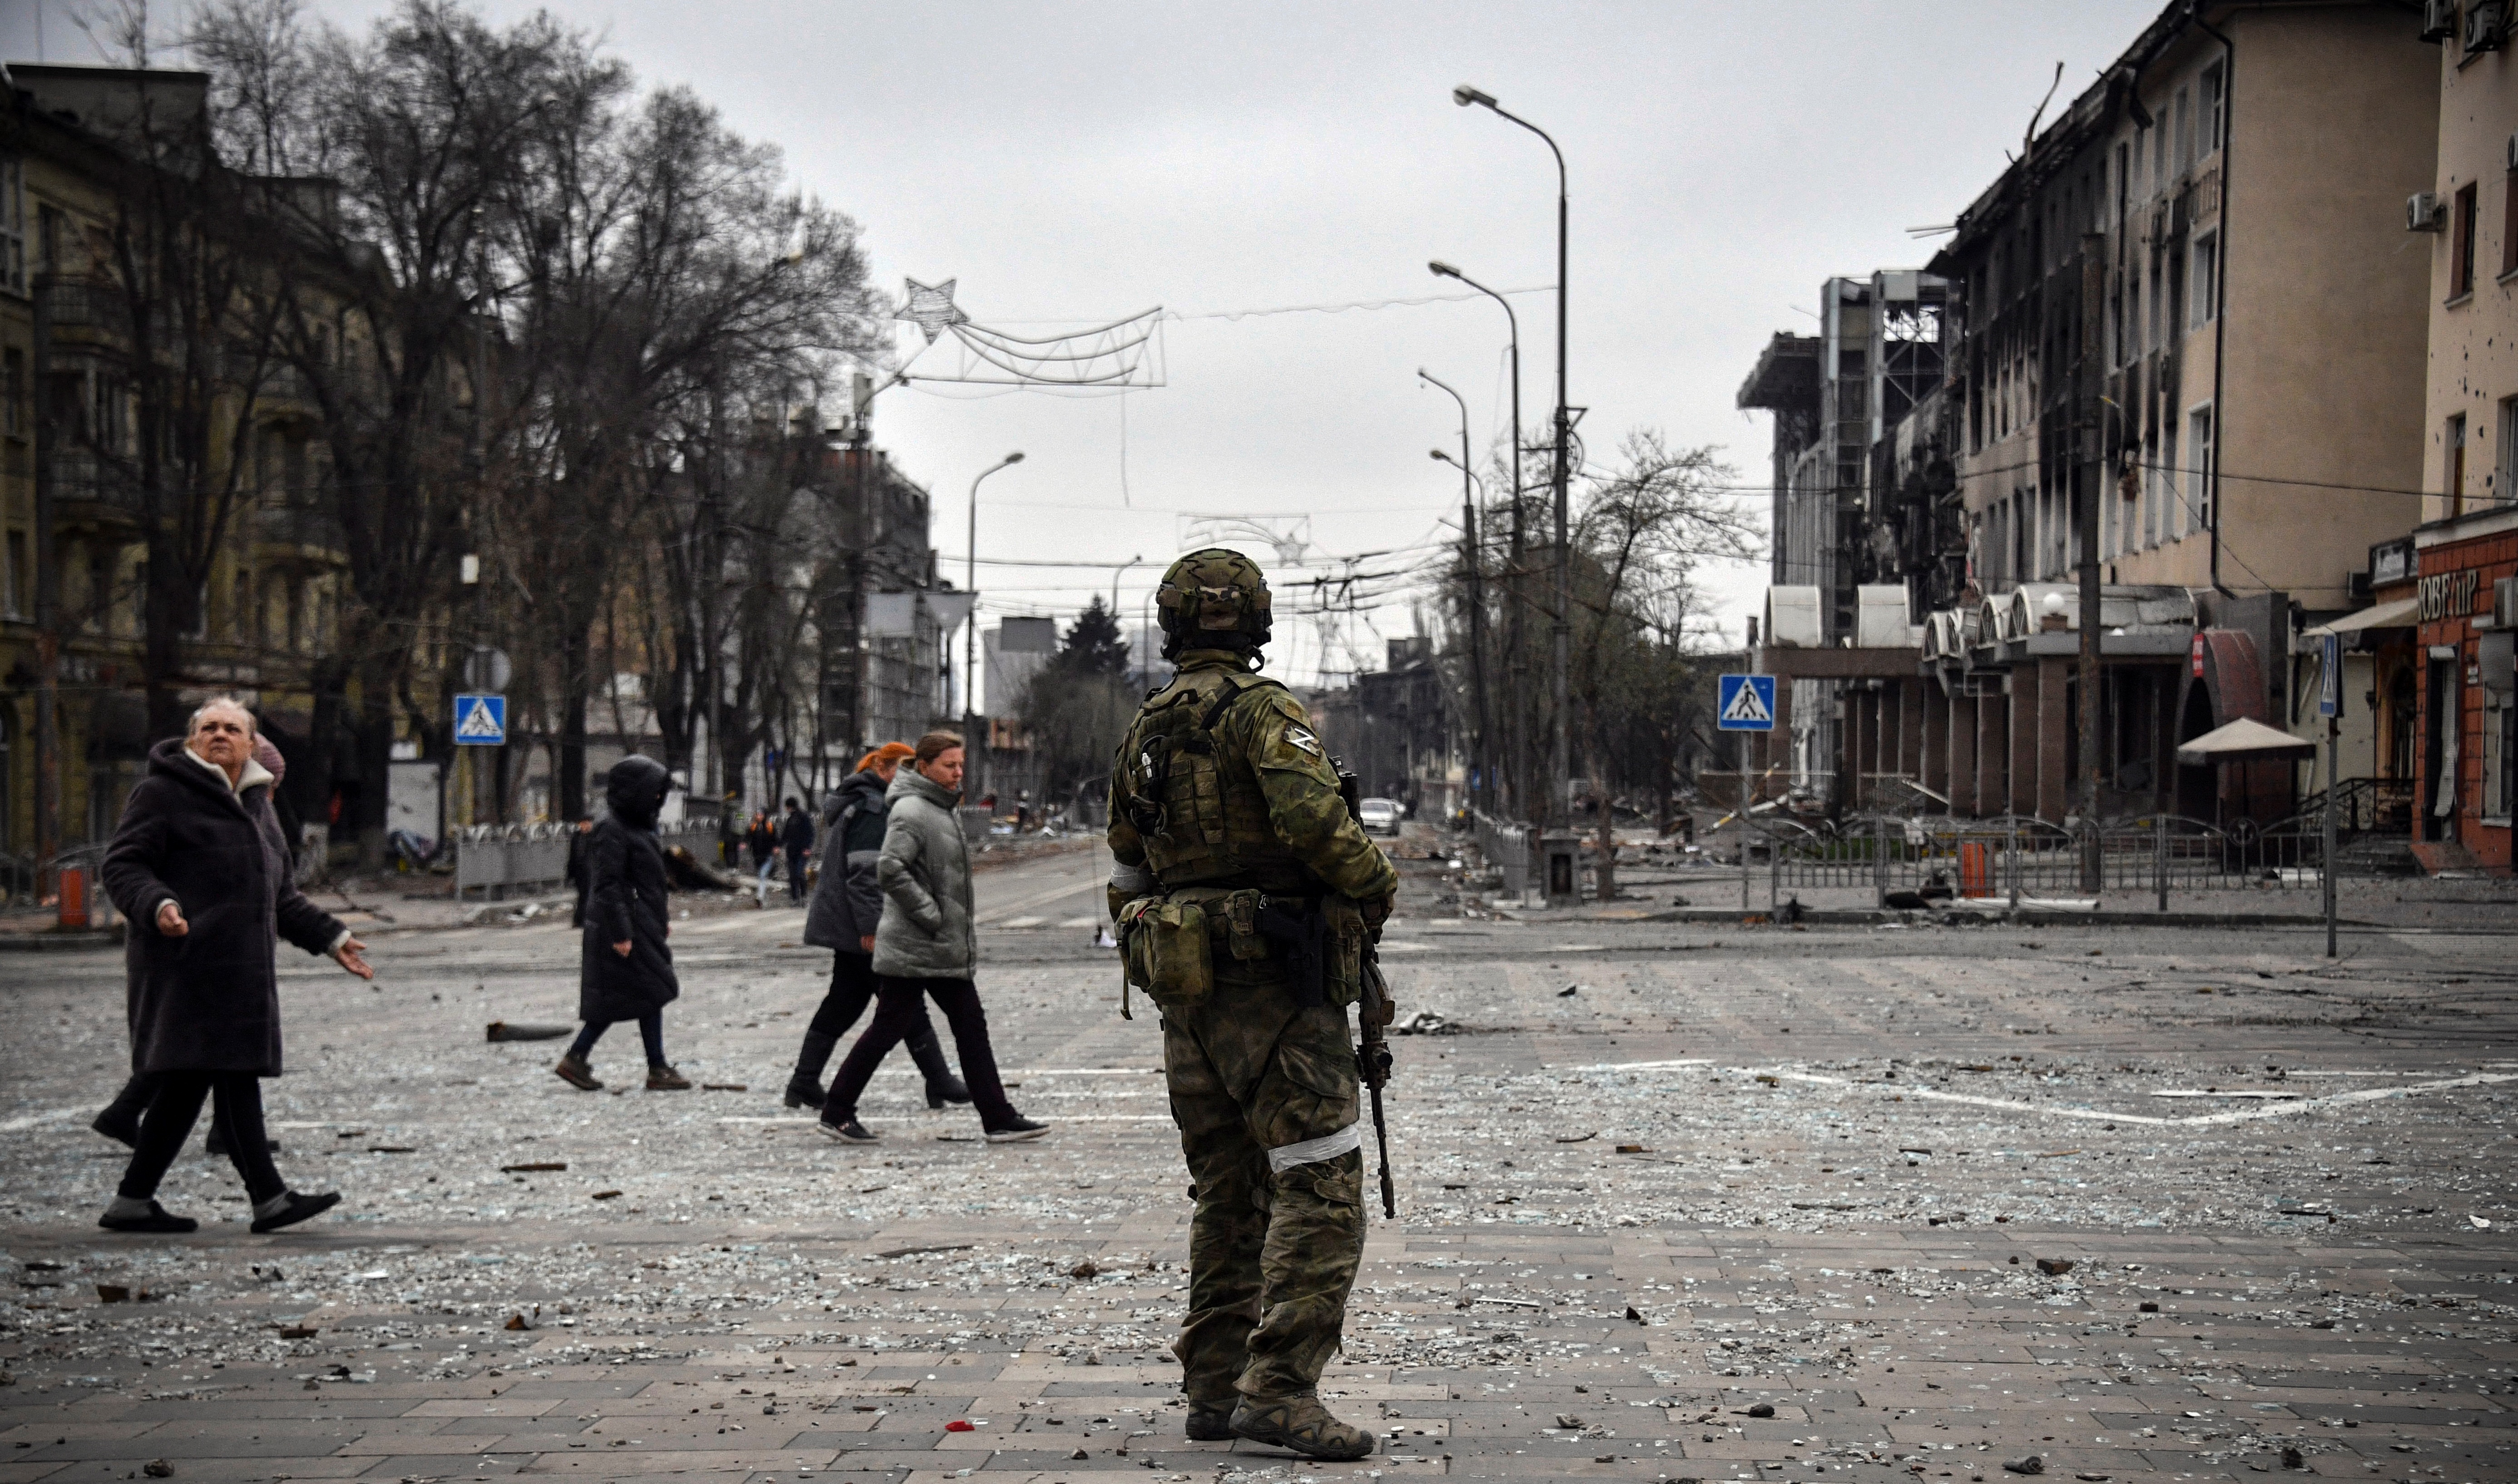 La gente pasa junto a un soldado ruso en el centro de Mariupol el 12 de abril de 2022 (Alexander NEMENOV / AFP)